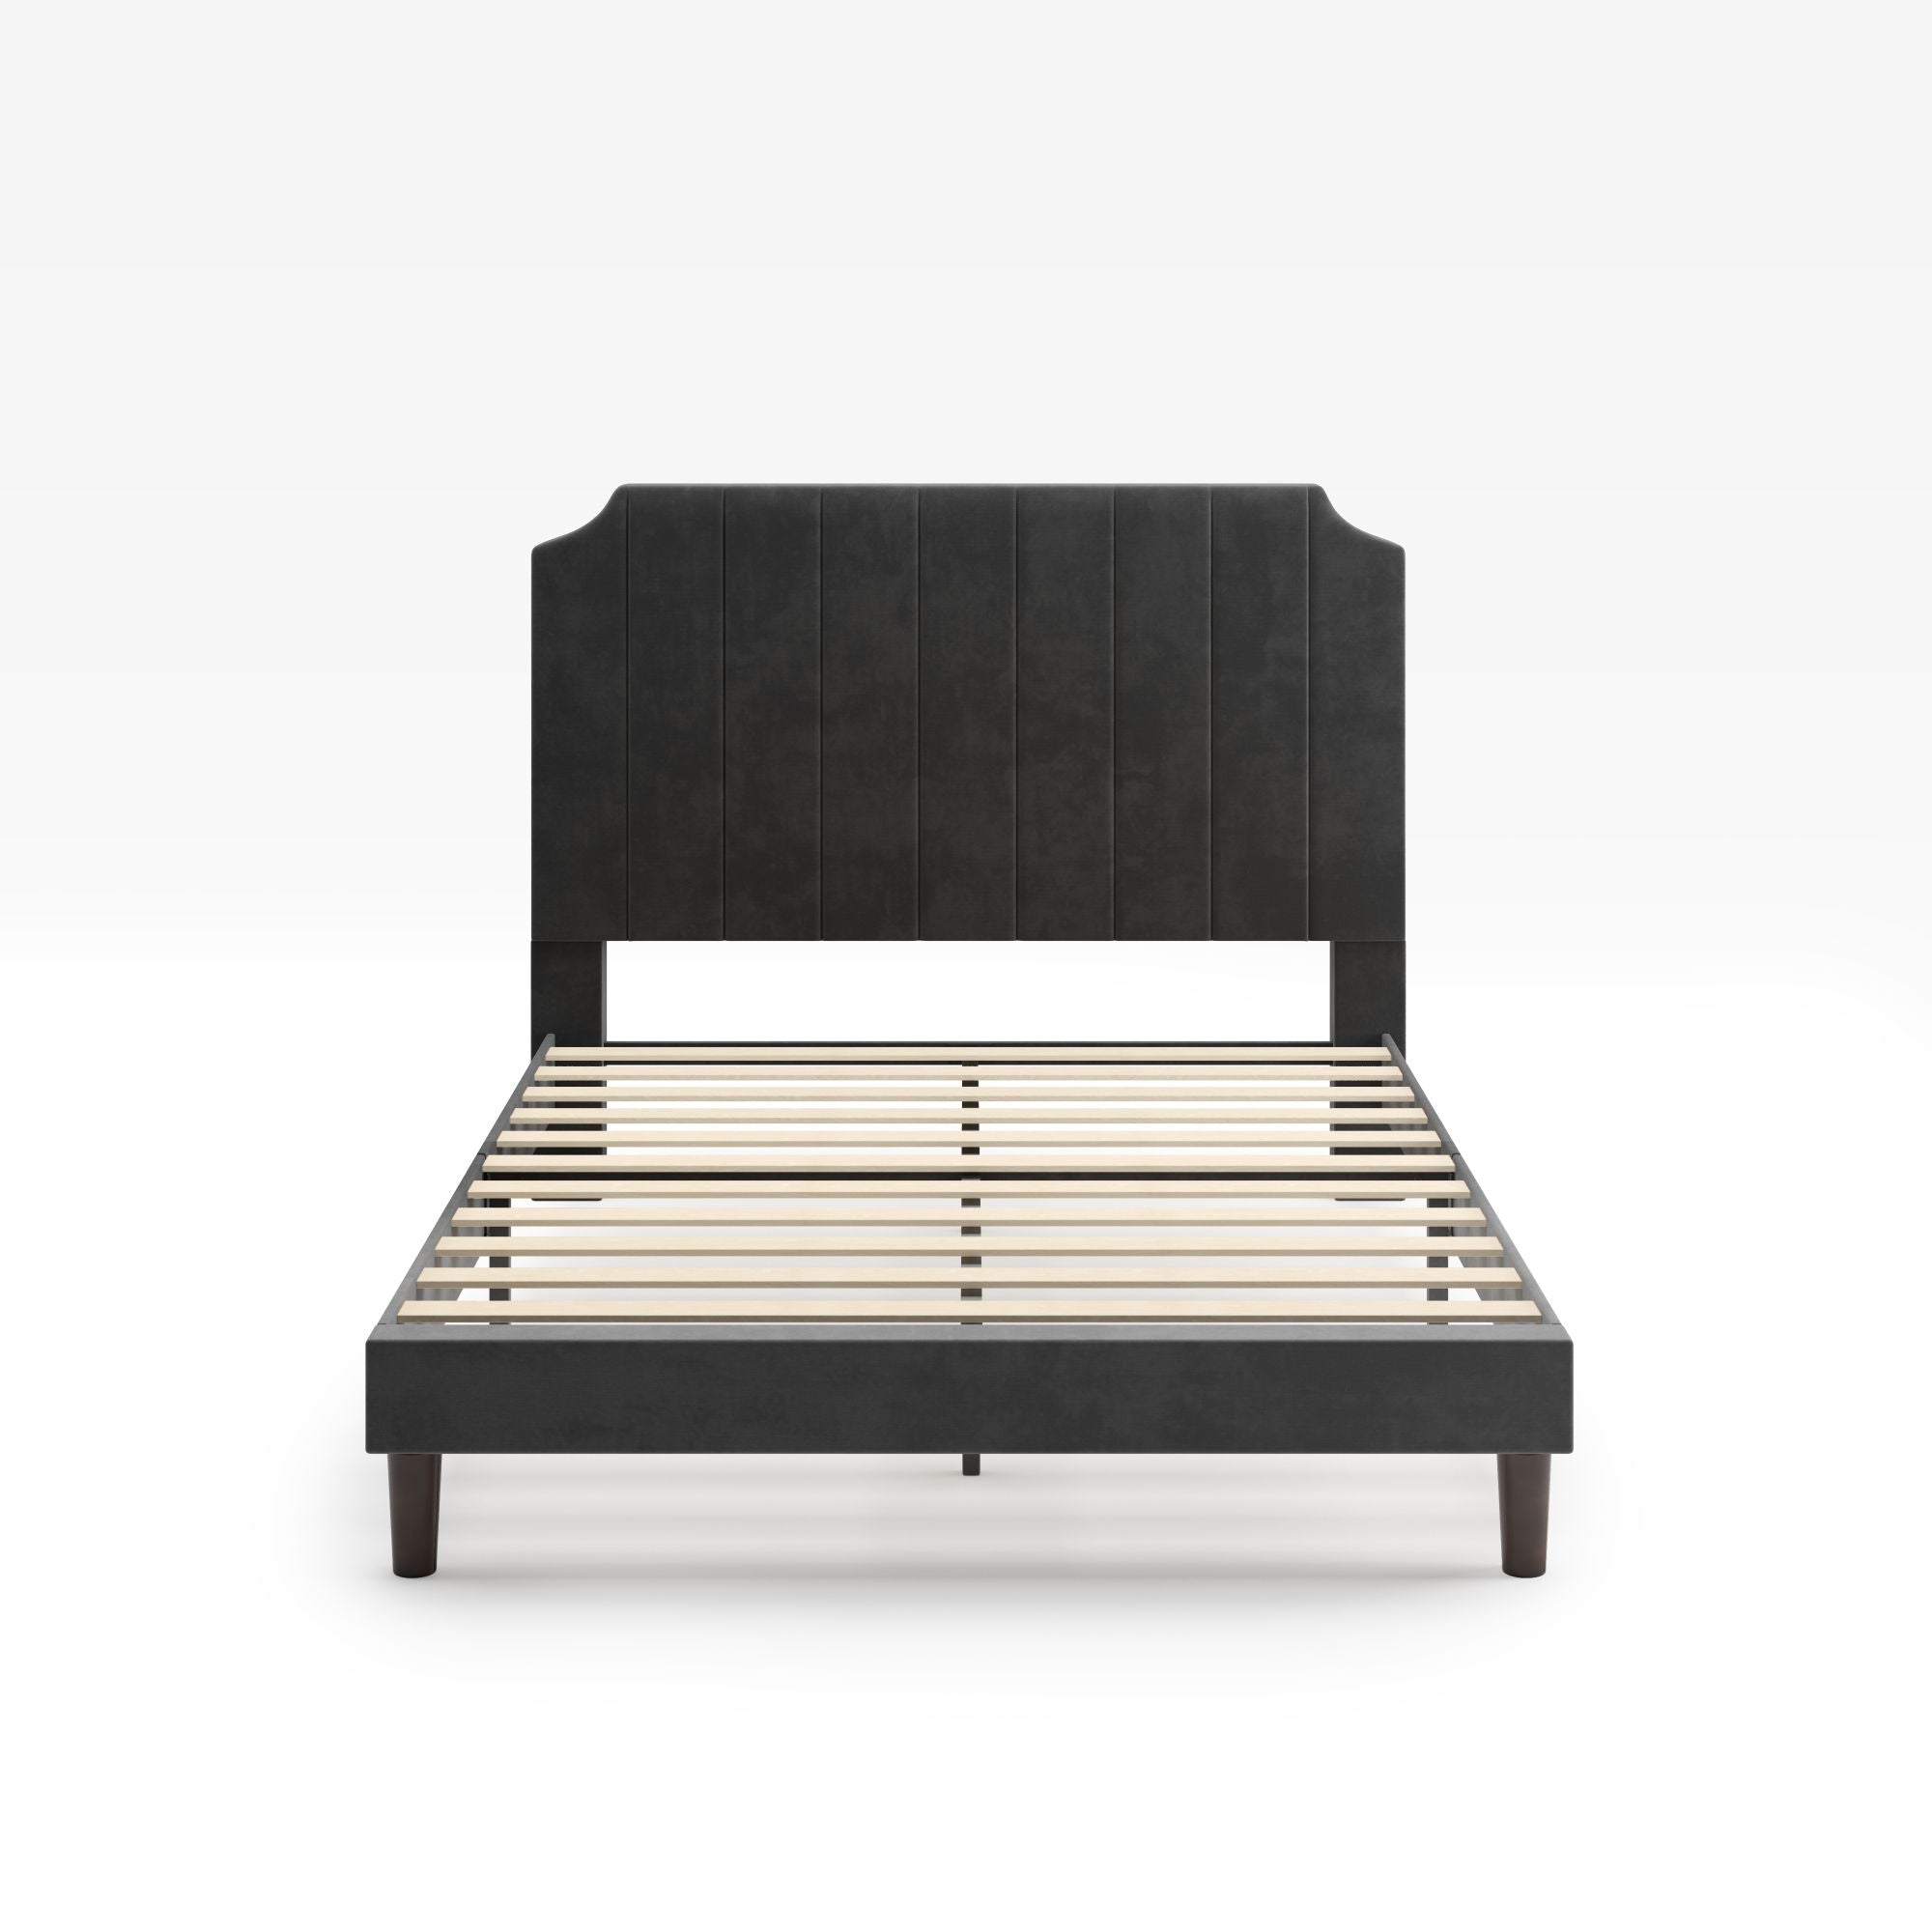 Charlotte upholstered platform bed frame Front